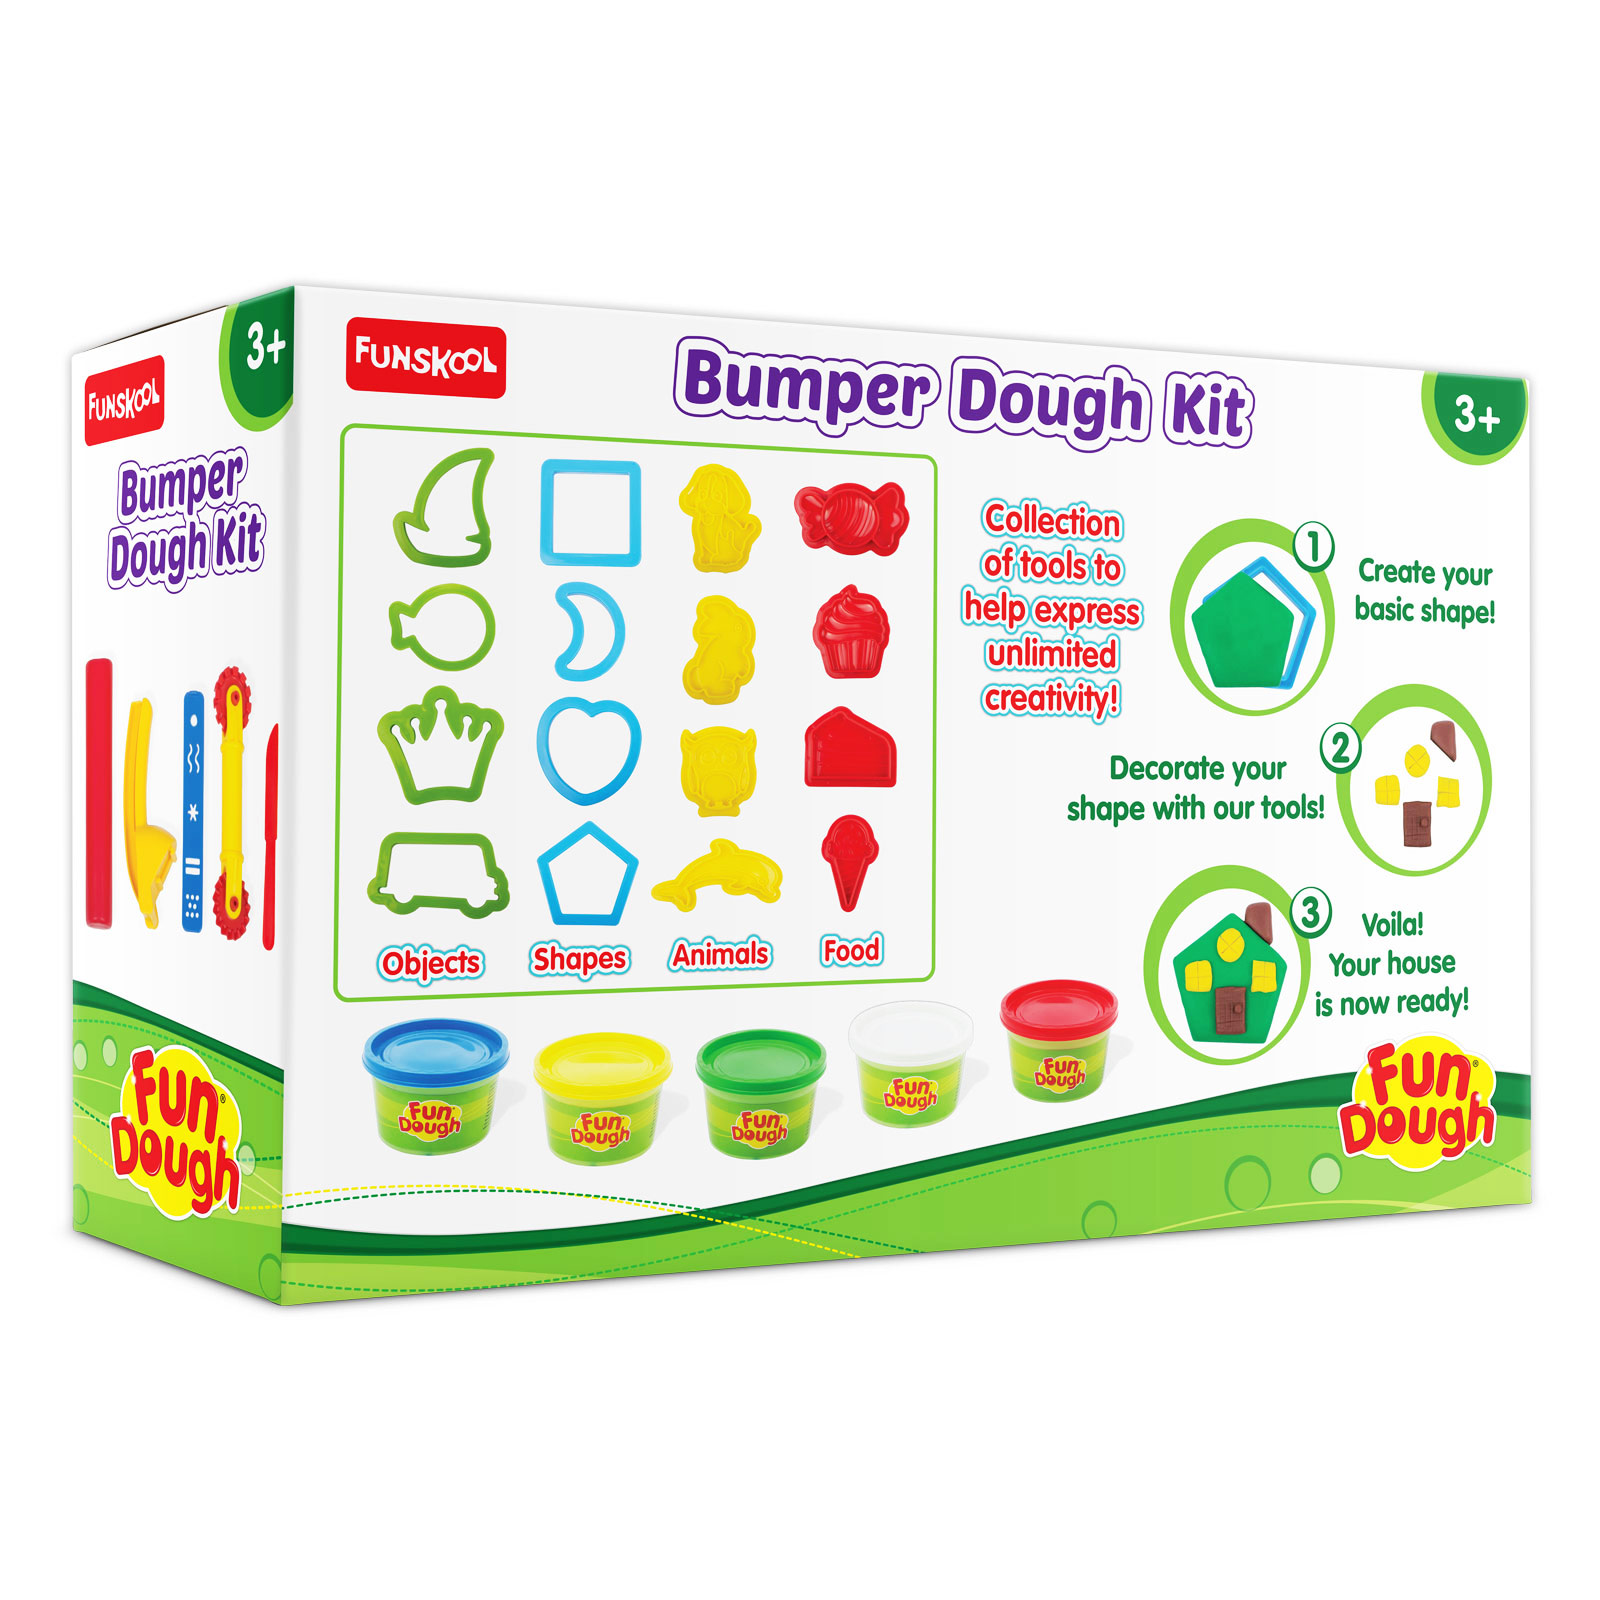 Bumper Dough Kit